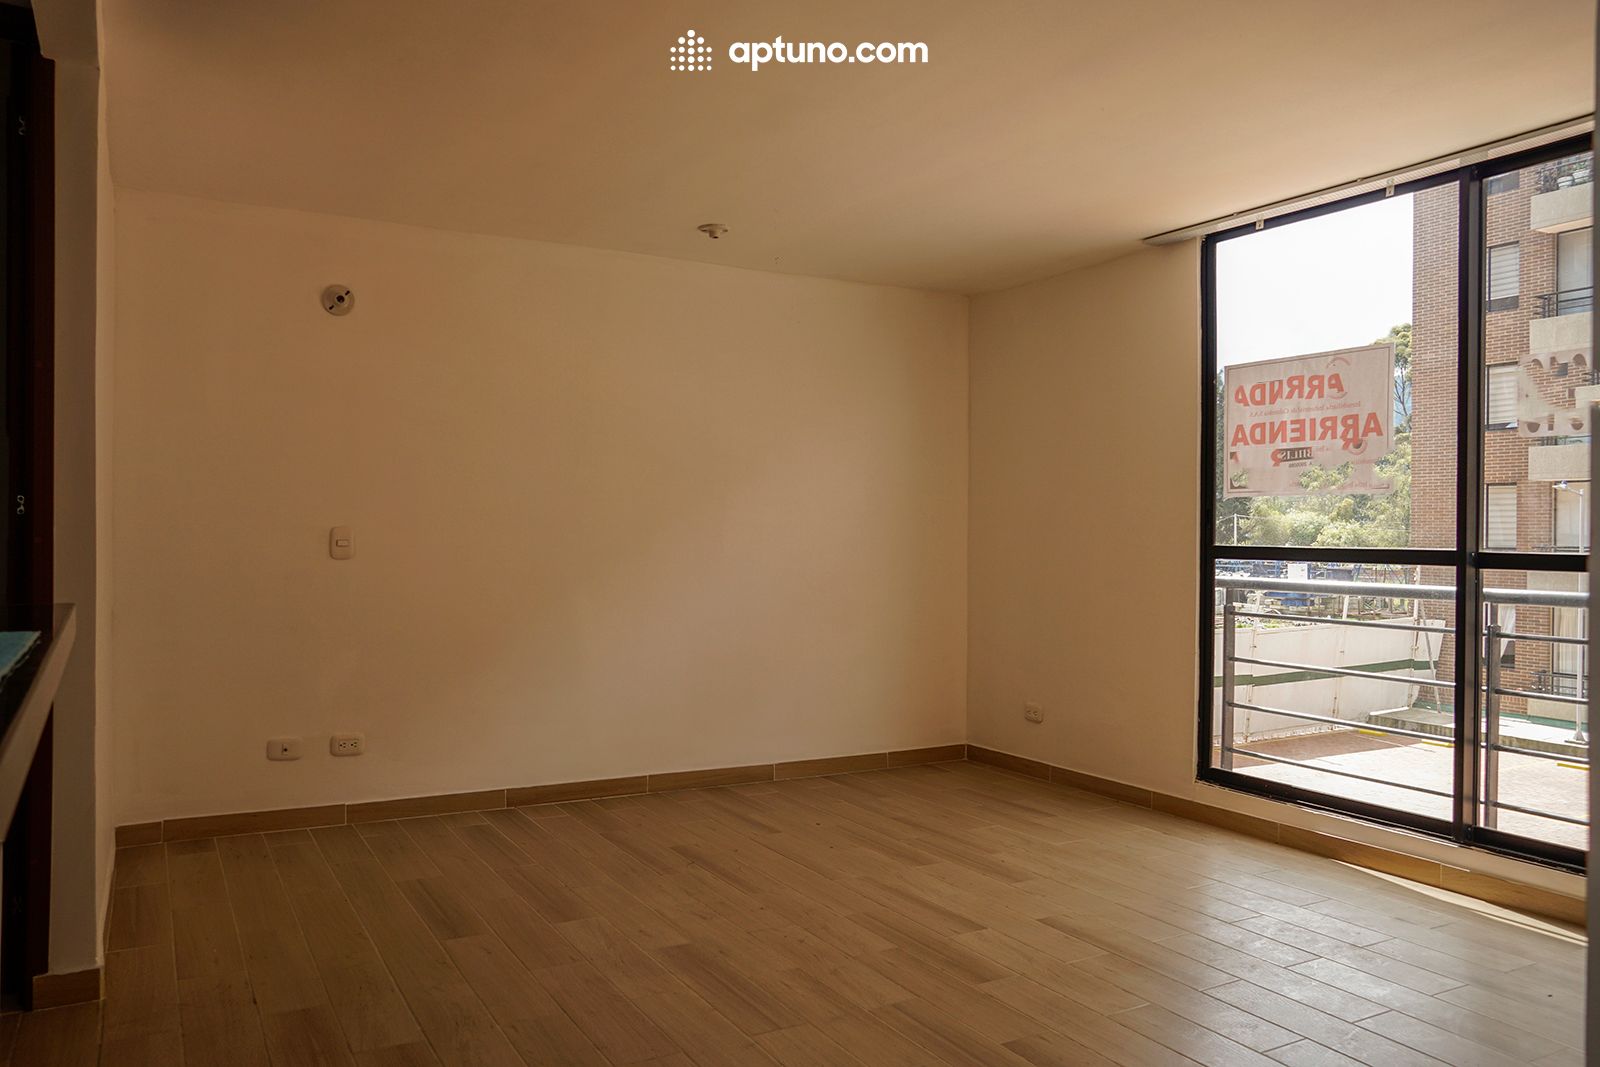 Apartamento en arriendo Zipaquirá 61 m² - $ 1.300.000,00